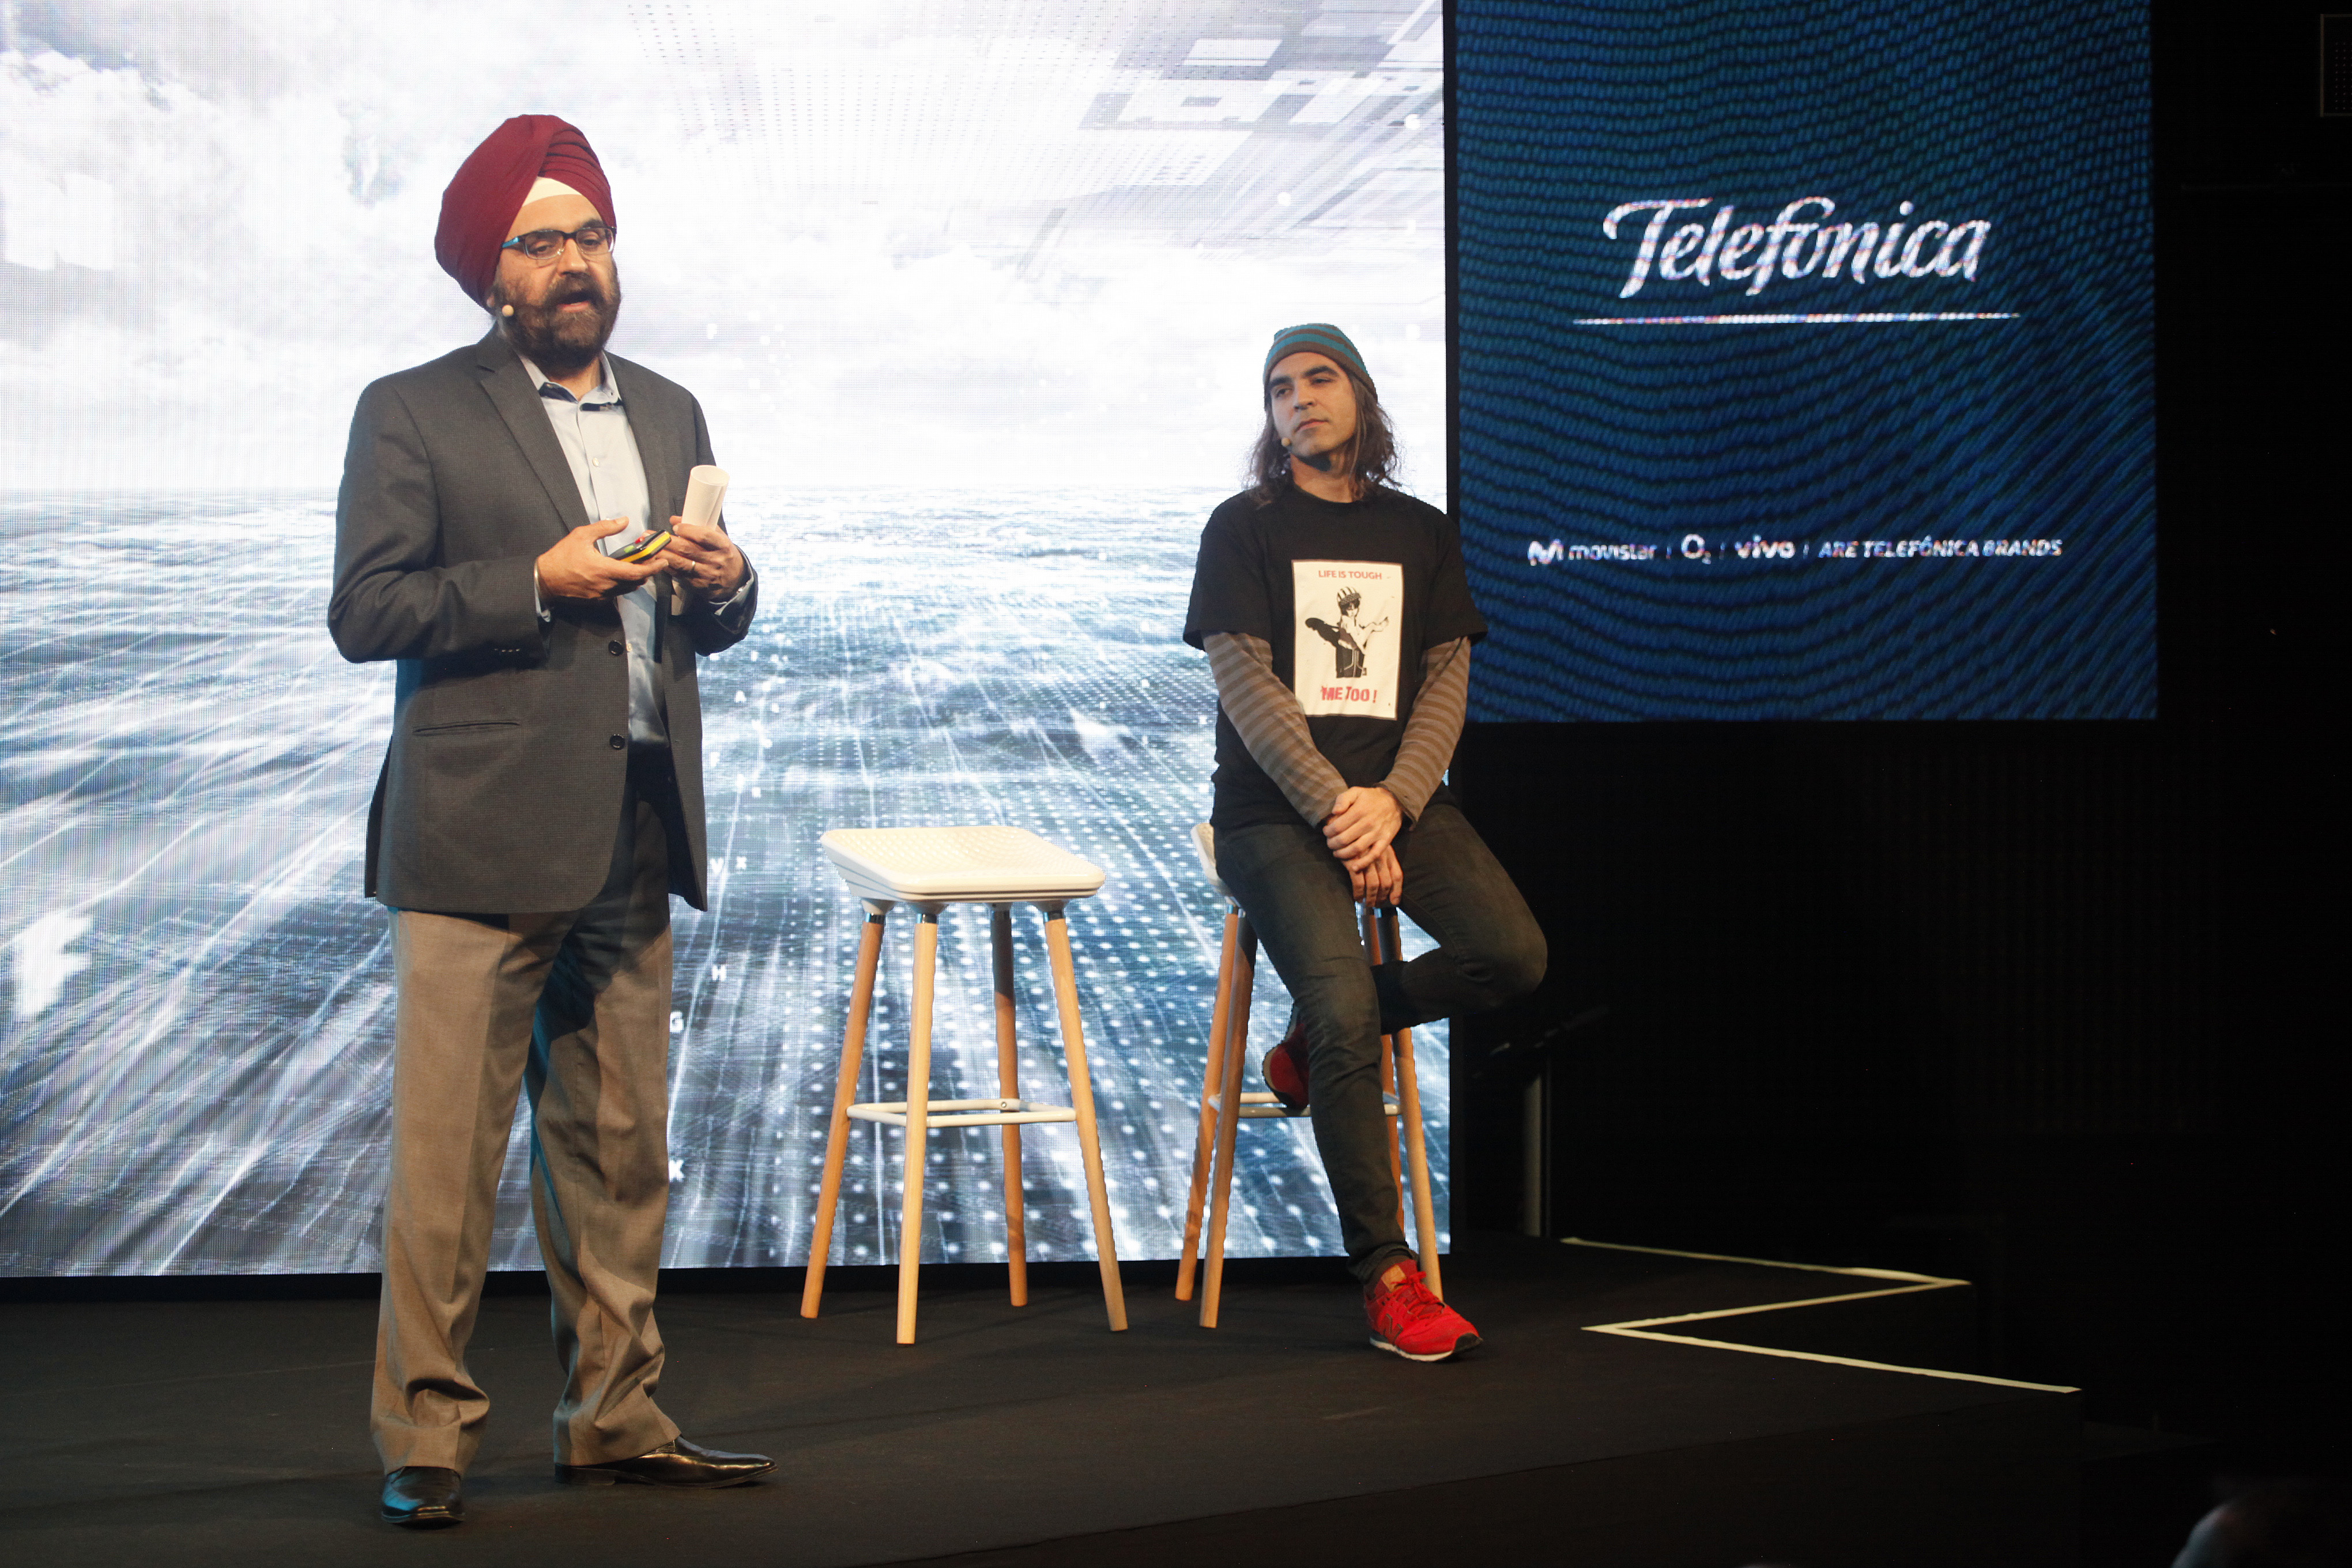 Gurpreet Singh Pall, VP del Ecosistema Global de Productos Bing y Cortana, y Chema Alonso, Chief Data Officer de Telefónica